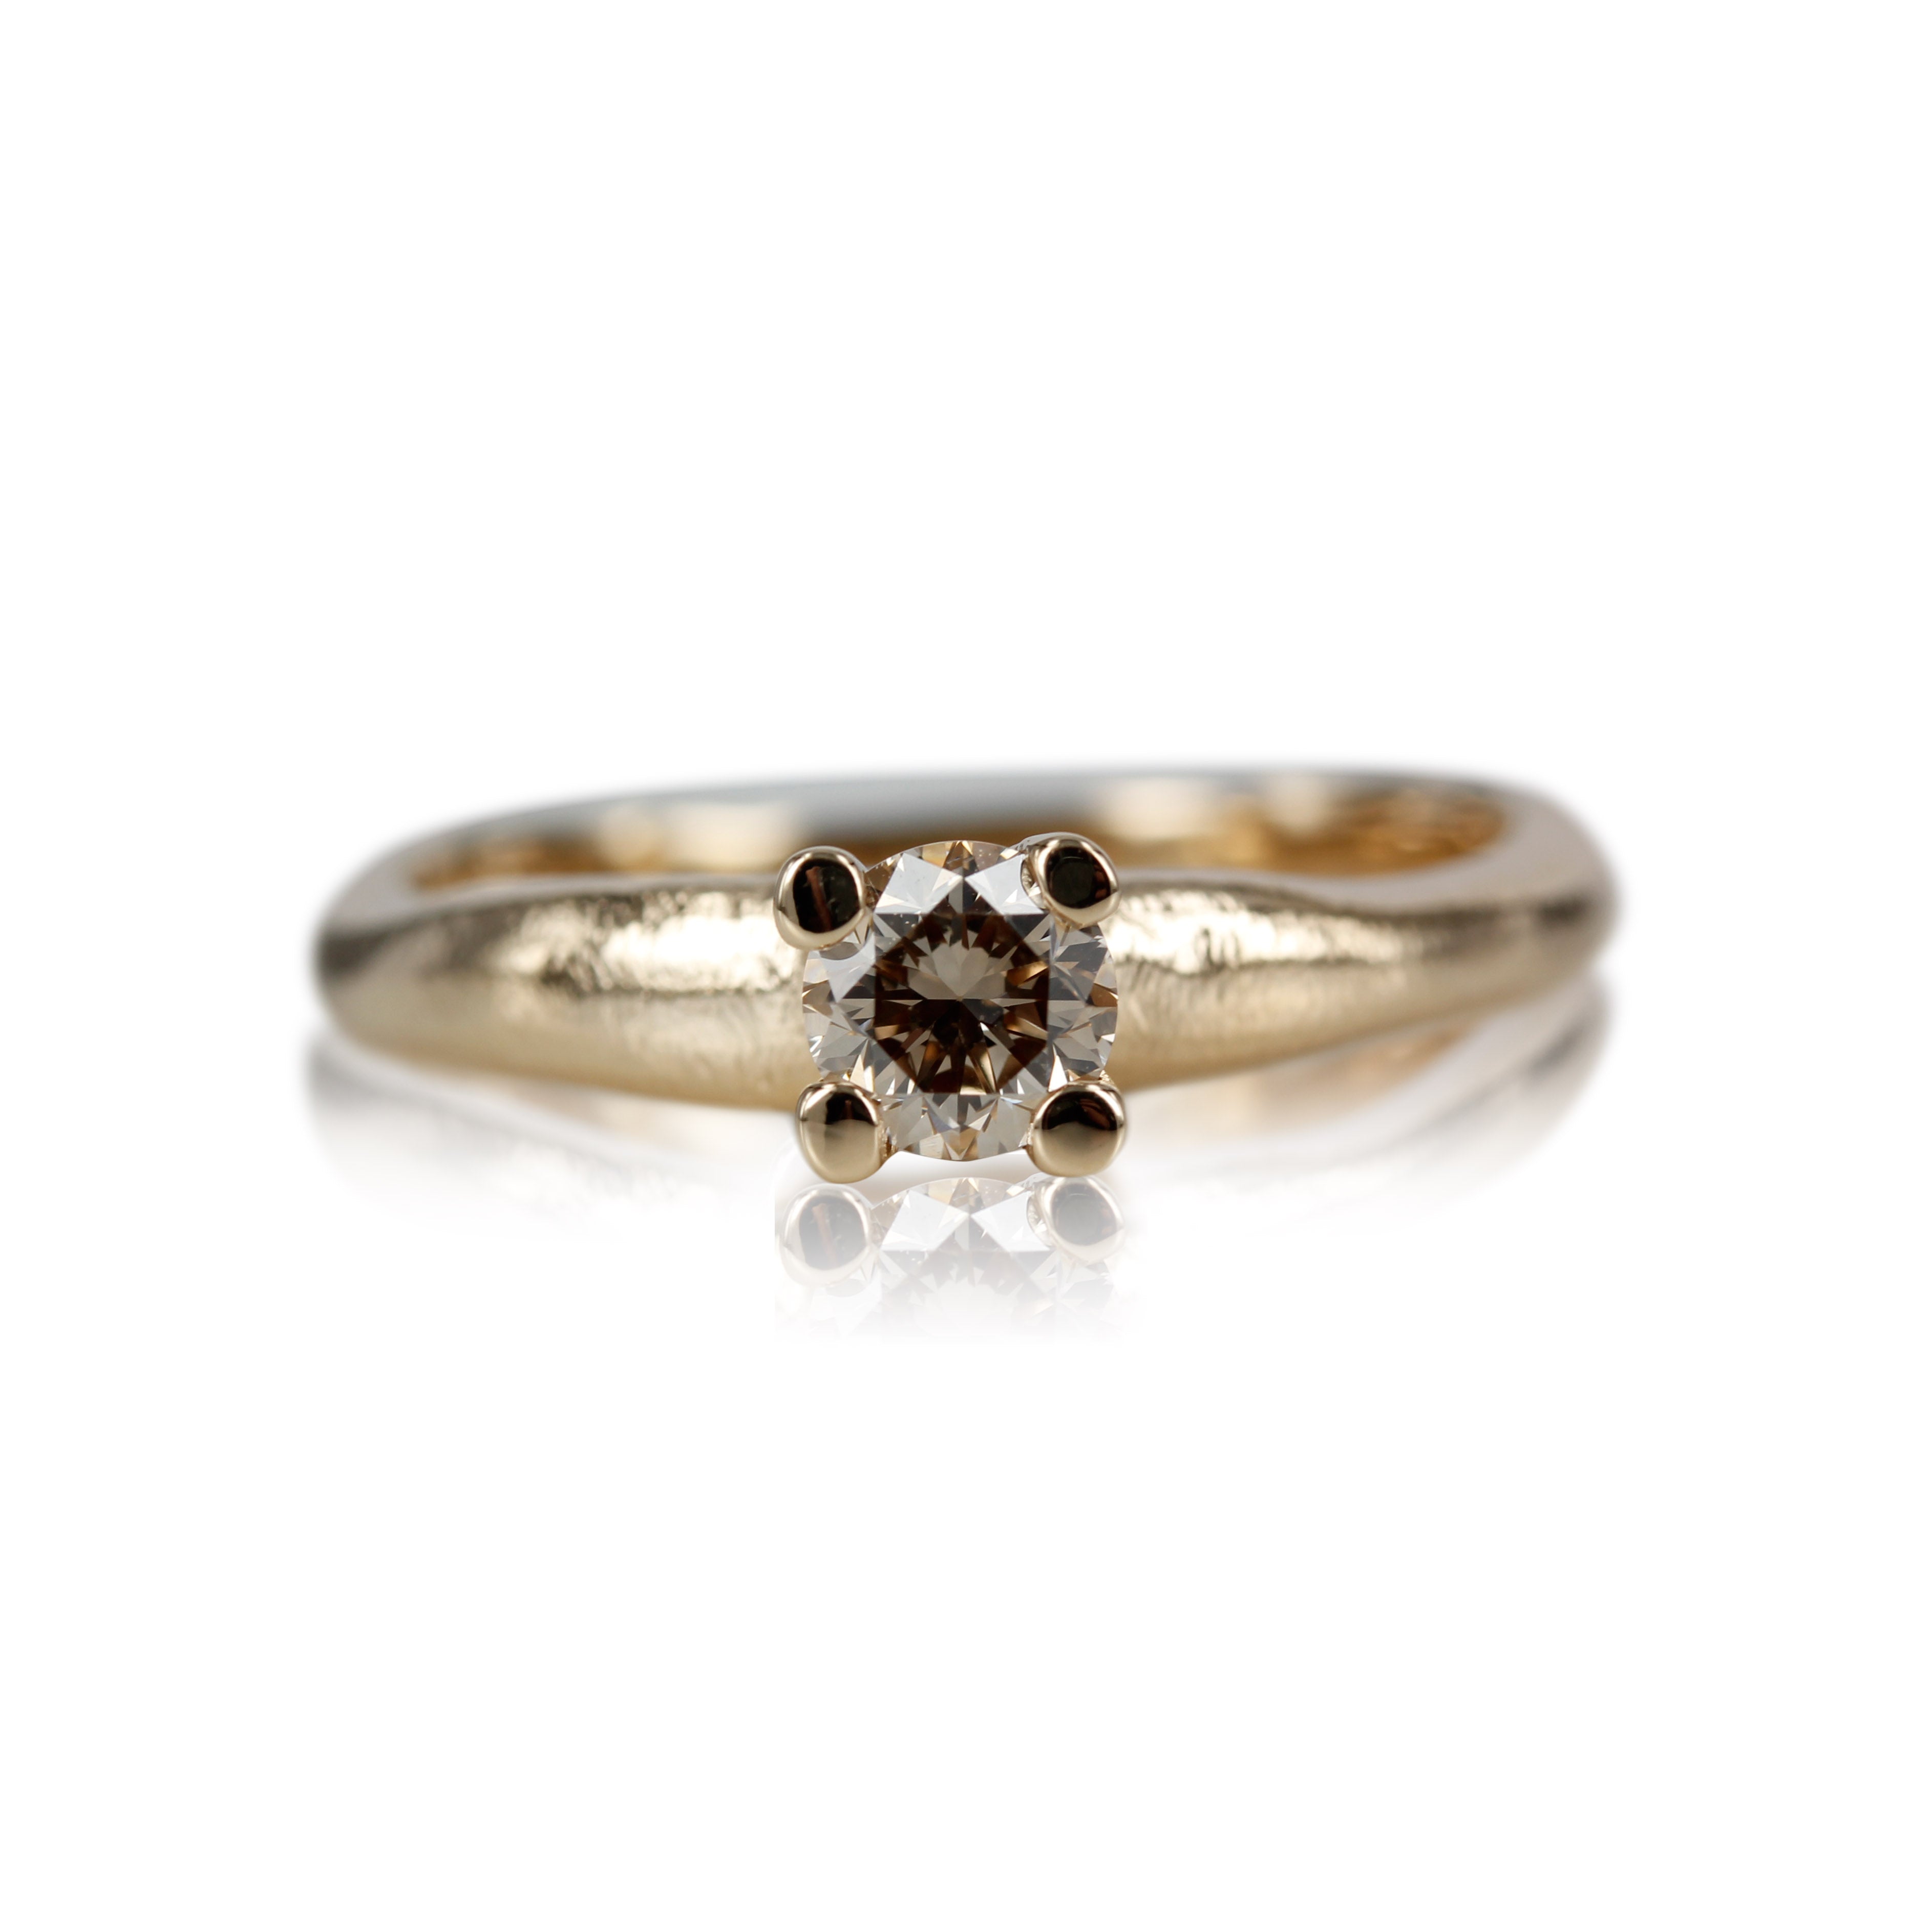 Organisk ring med rustik look og stor champagner farvet diamant.